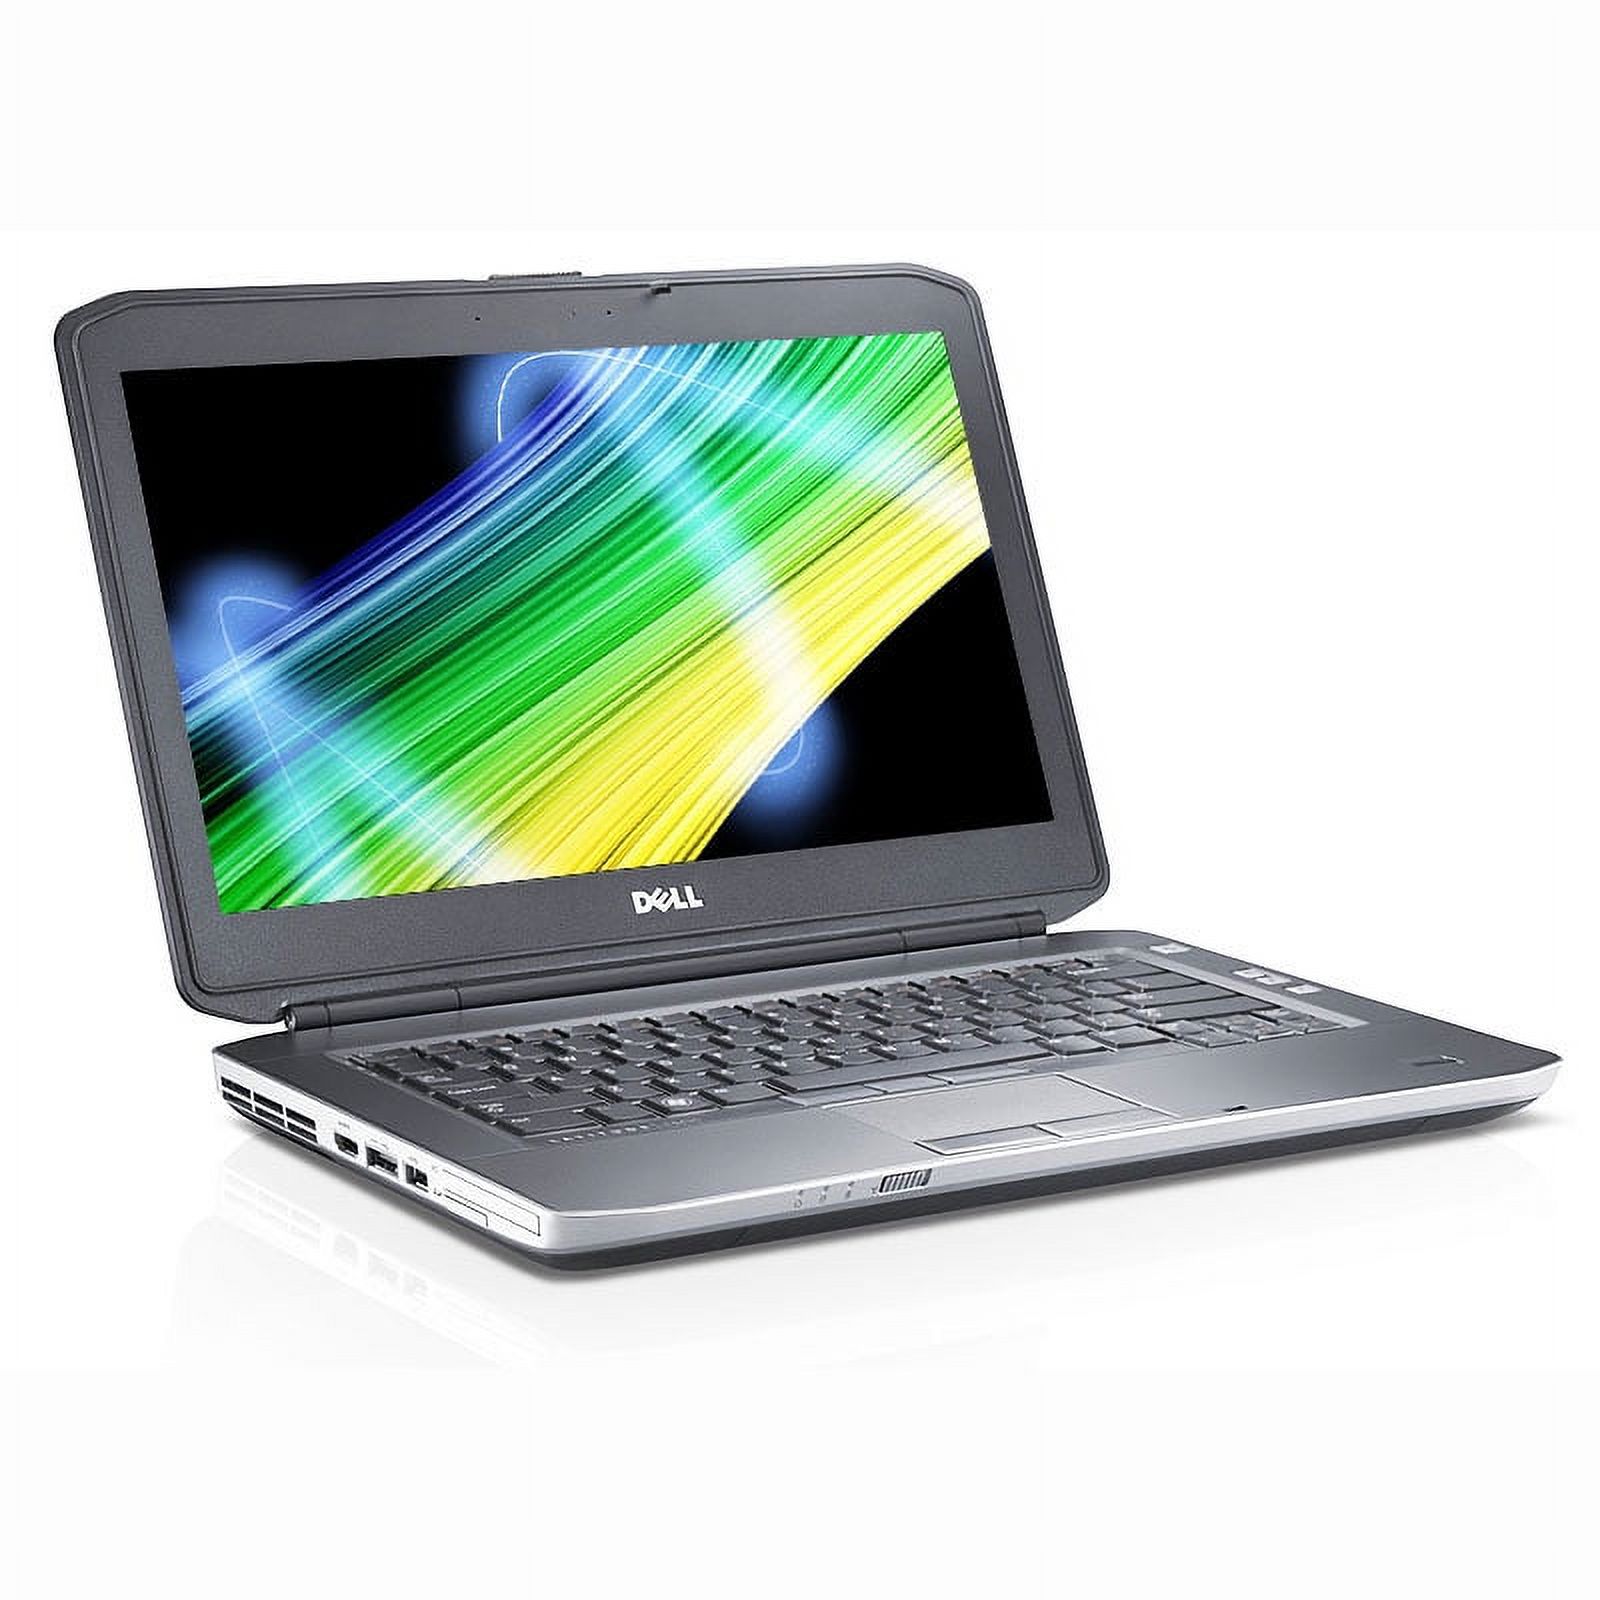 Pre-Owned Dell Latitude E5430 i3 2.4GHz 4GB 320GB DVDRW Win 10 Pro 64 Laptop Computer B - image 3 of 4